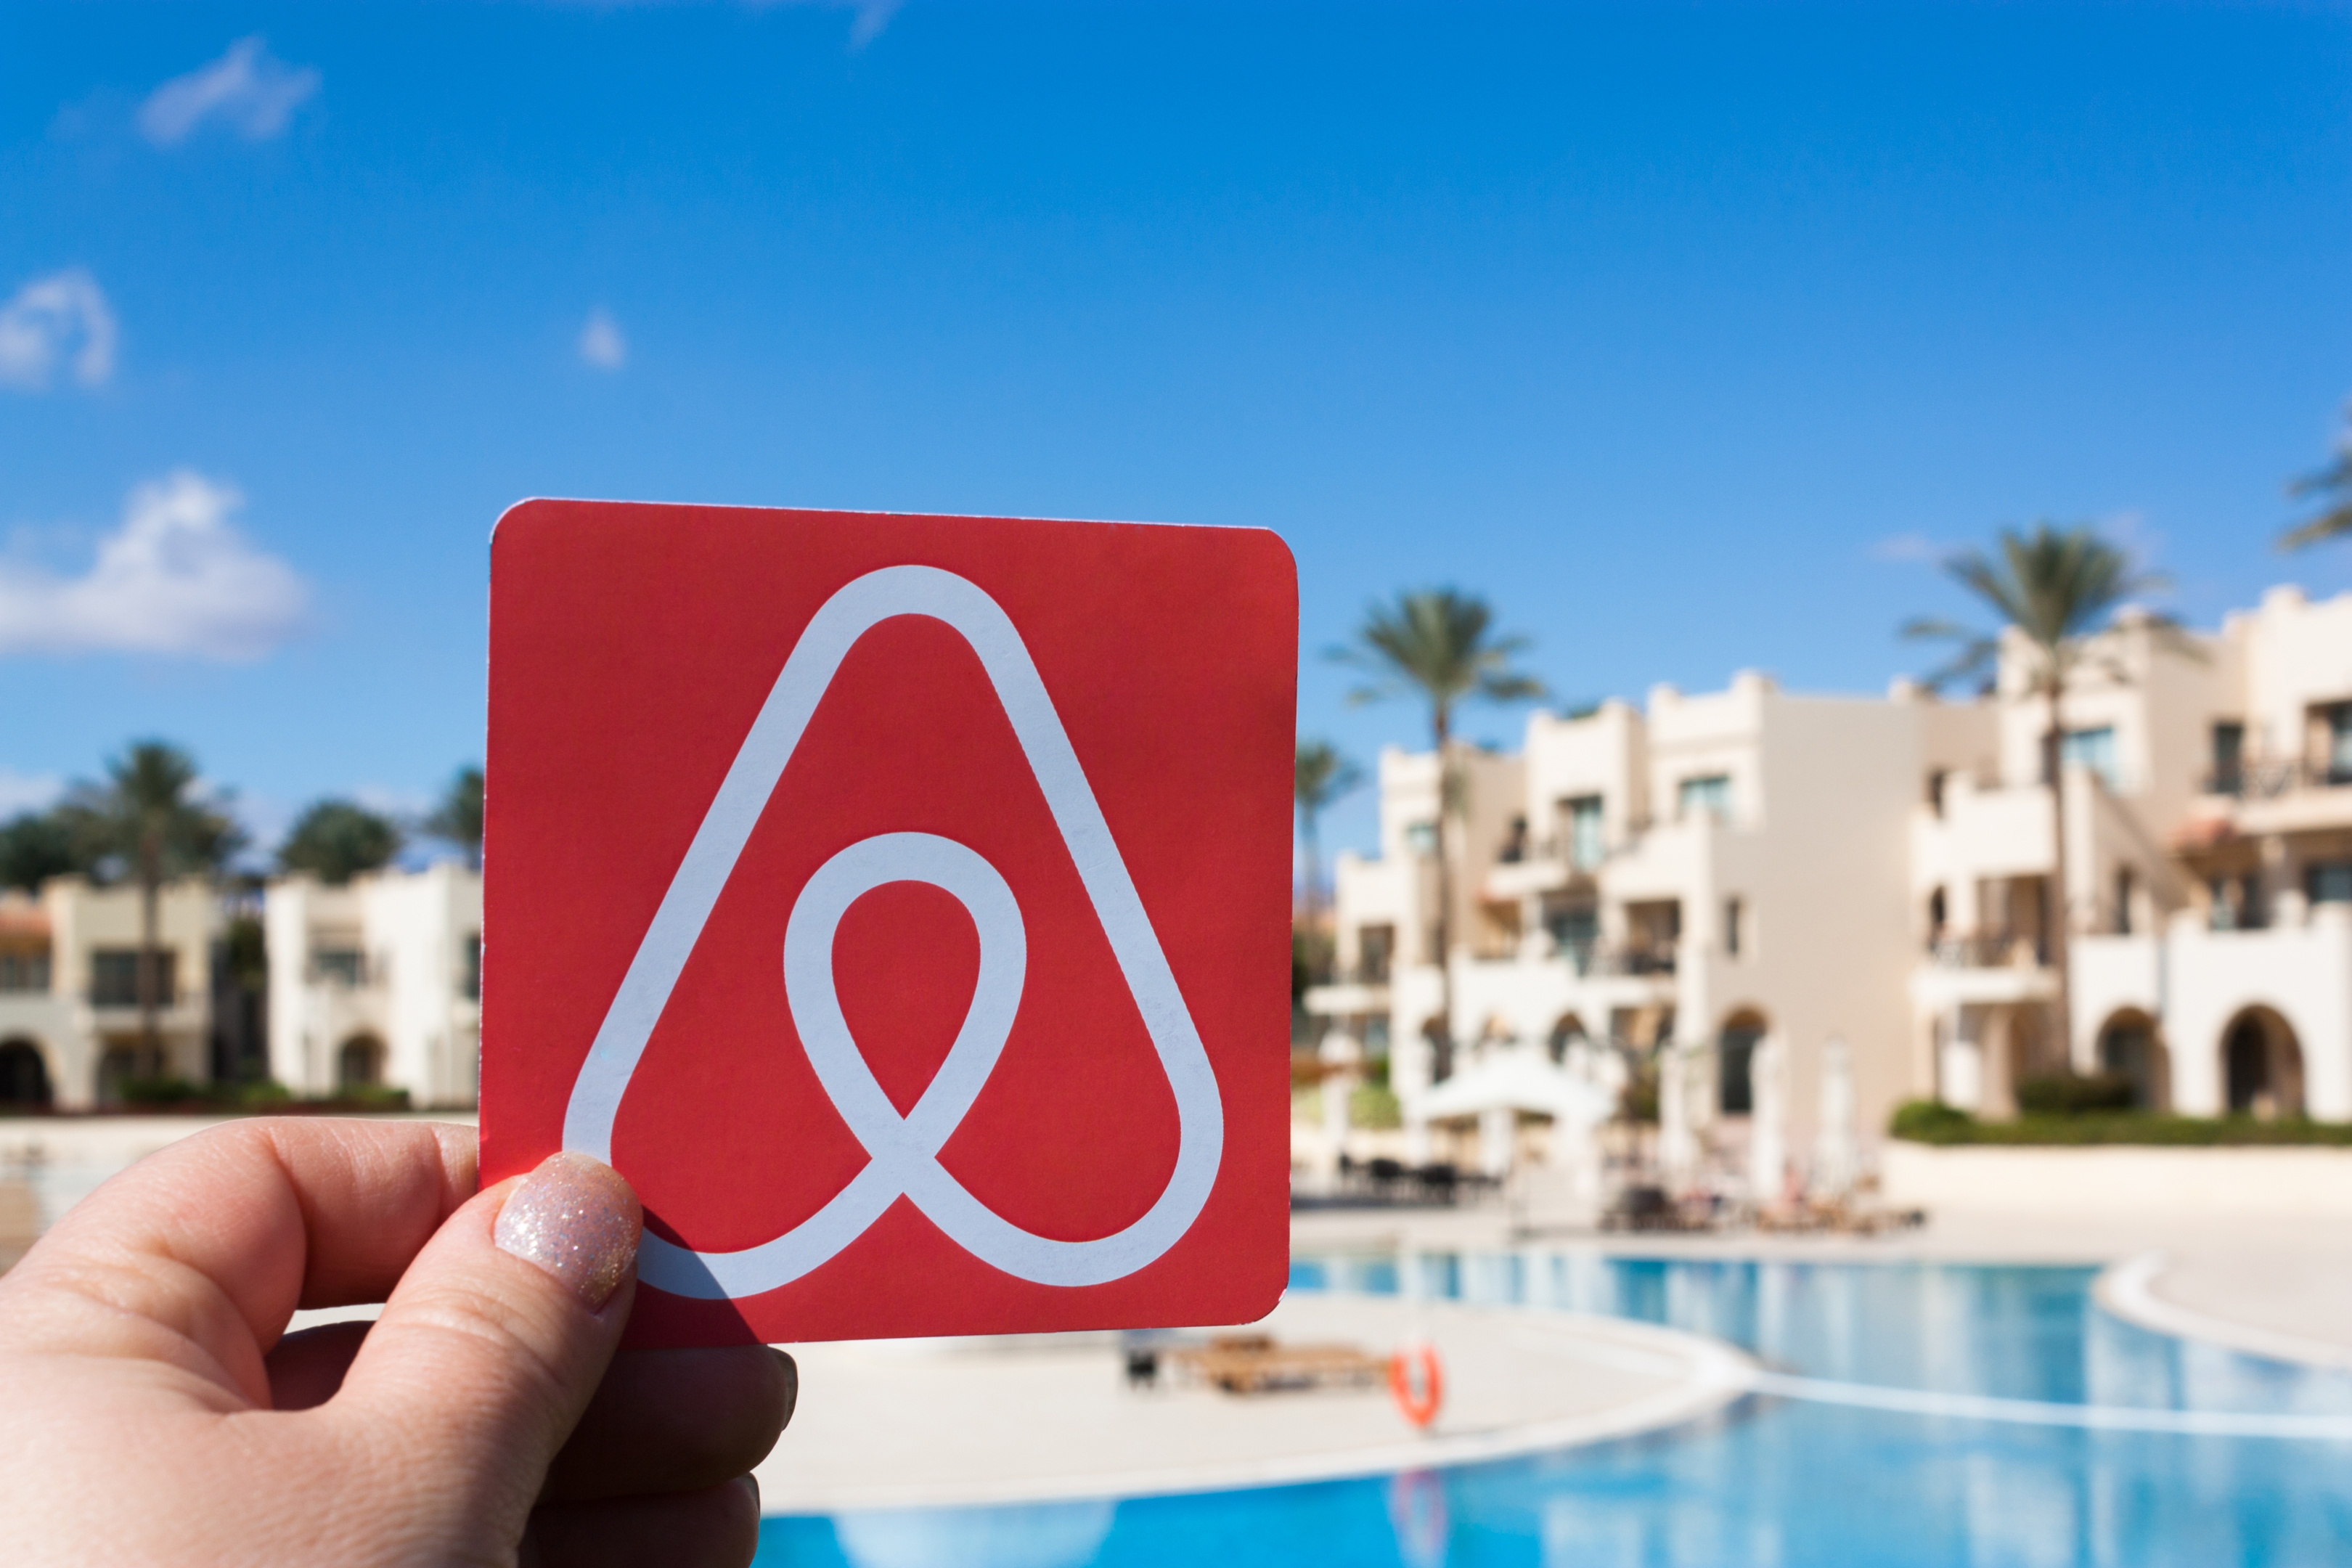 Modelo de negocio de la plataforma Airbnb. Así es como gana dinero Airbnb.